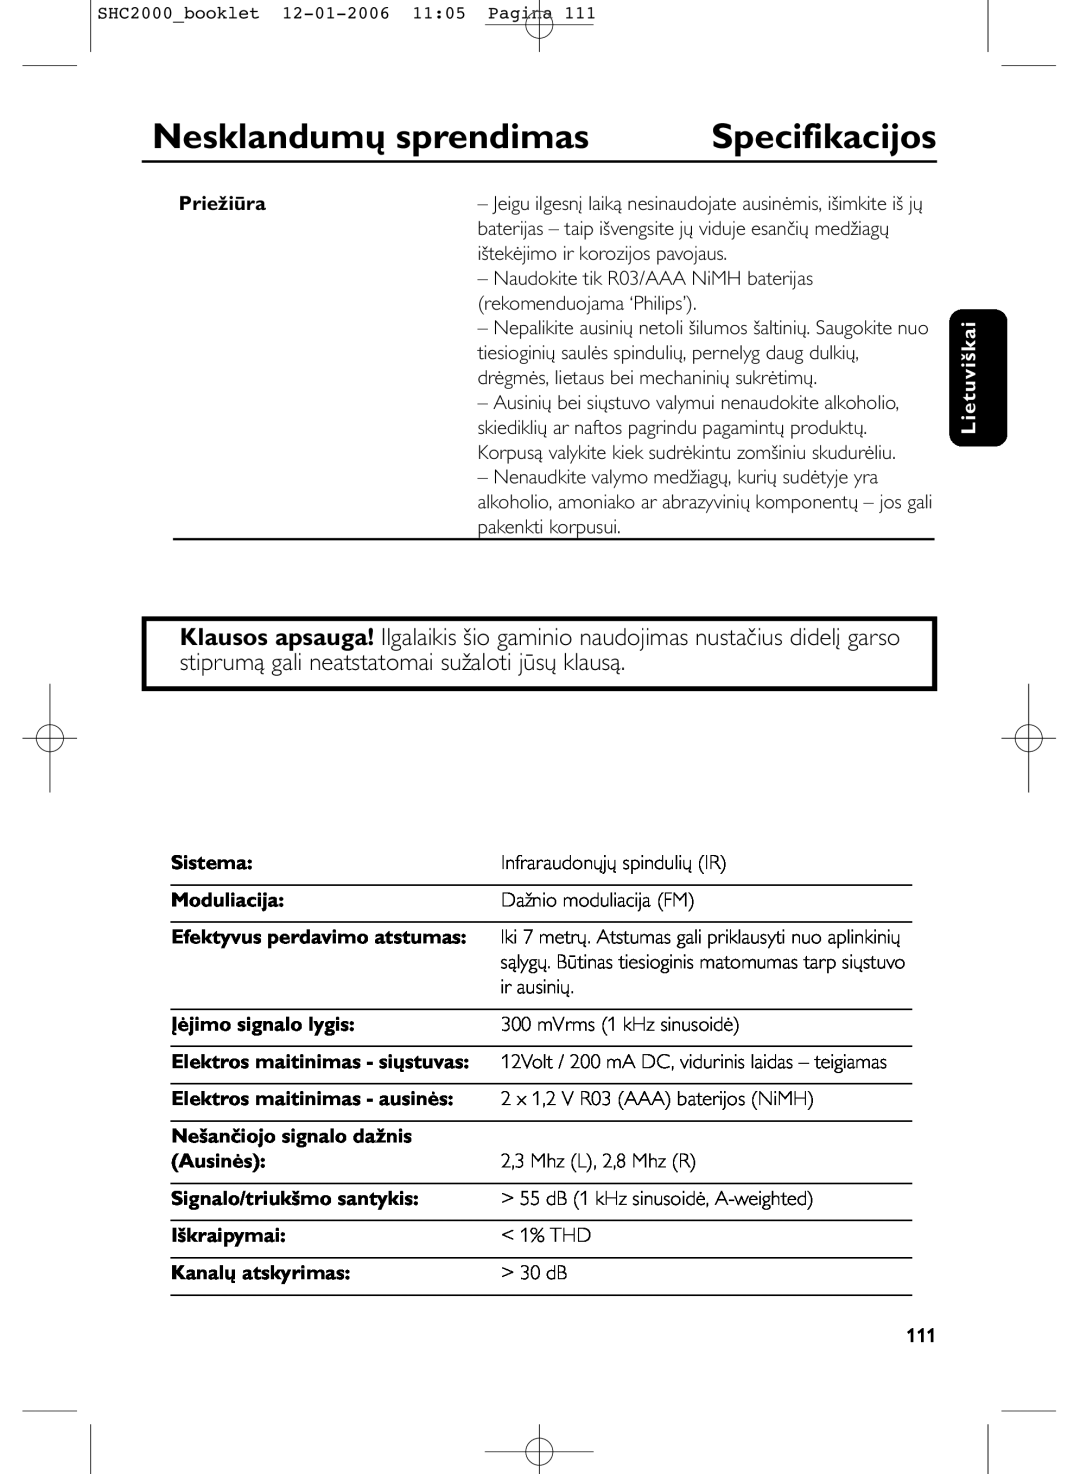 Philips SHC2000 manual Specifikacijos, Nesklandumų sprendimas, Priežiūra, Lietuviškai, Sistema, Infraraudonųjų spindulių IR 